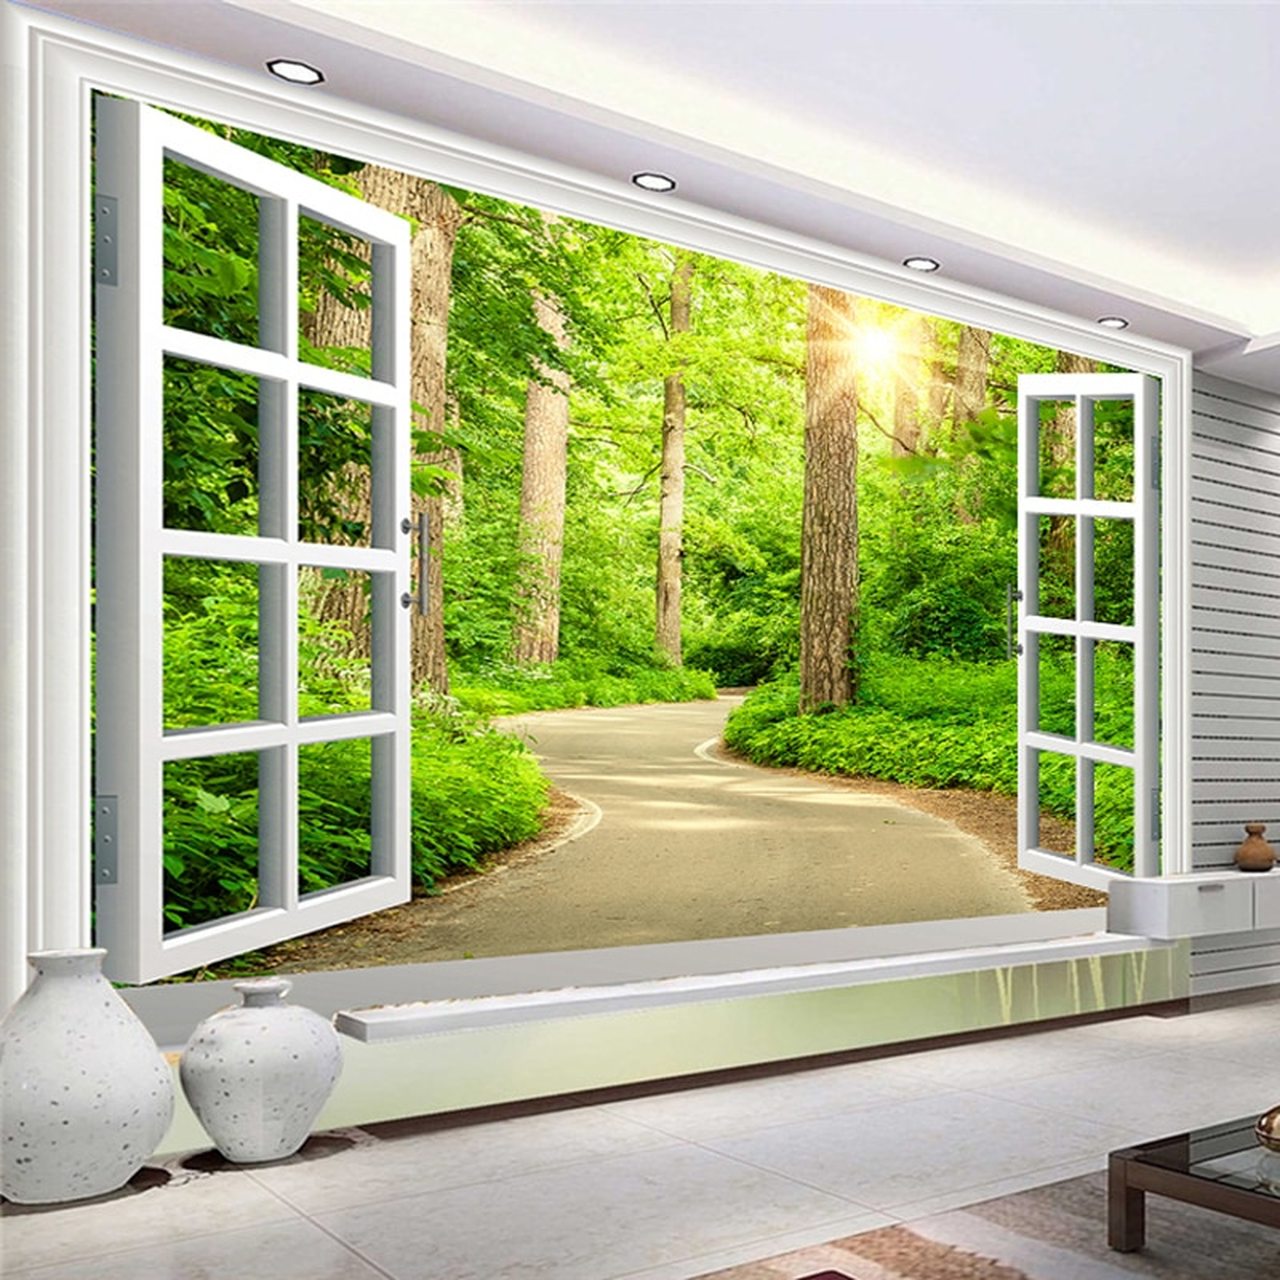 nature wallpaper hd 3d,window,property,door,room,home